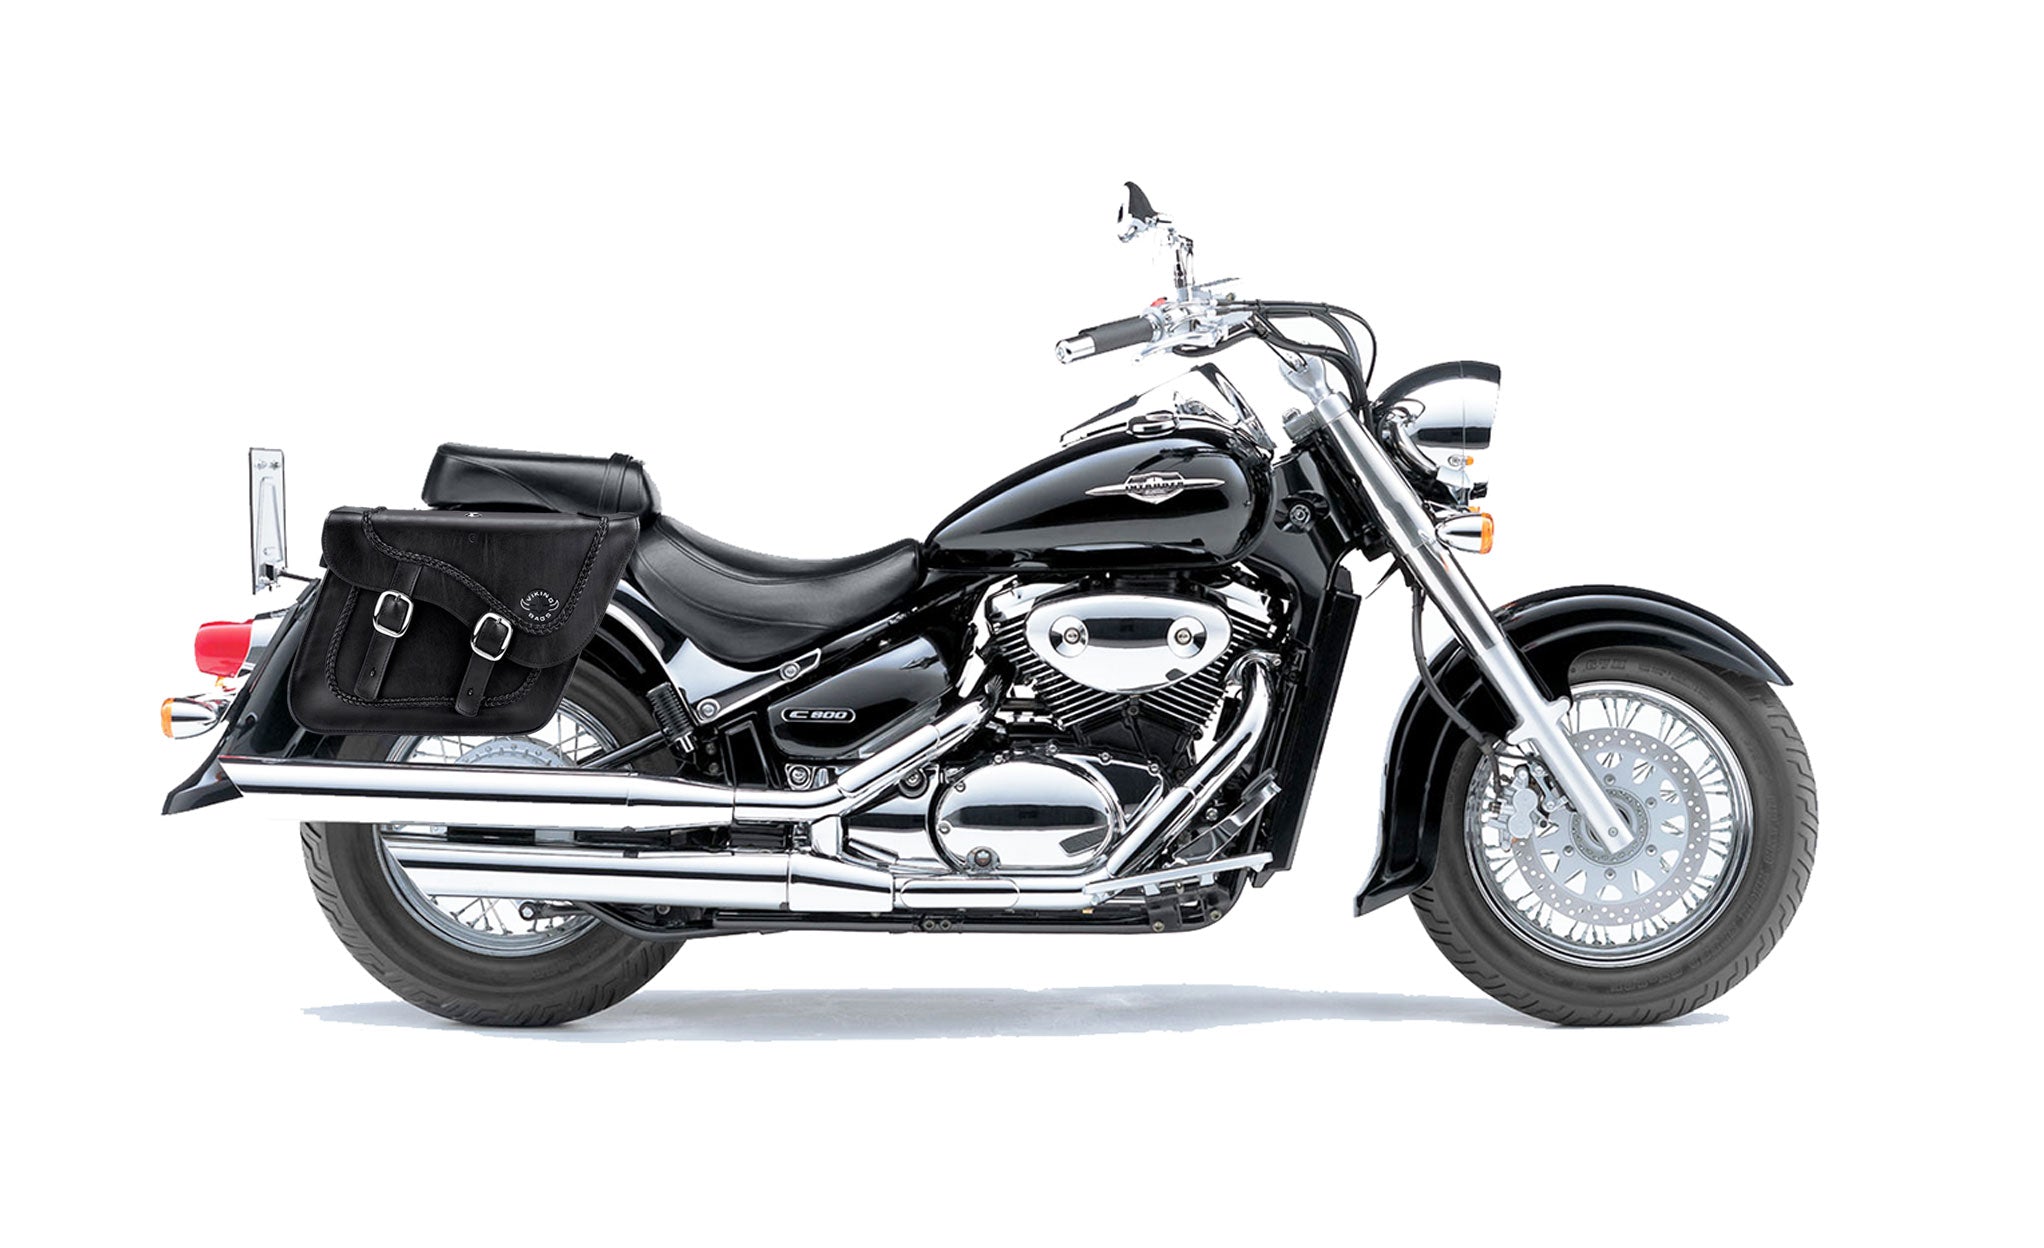 Viking Americano Suzuki Volusia 800 Braided Large Leather Motorcycle Saddlebags on Bike Photo @expand